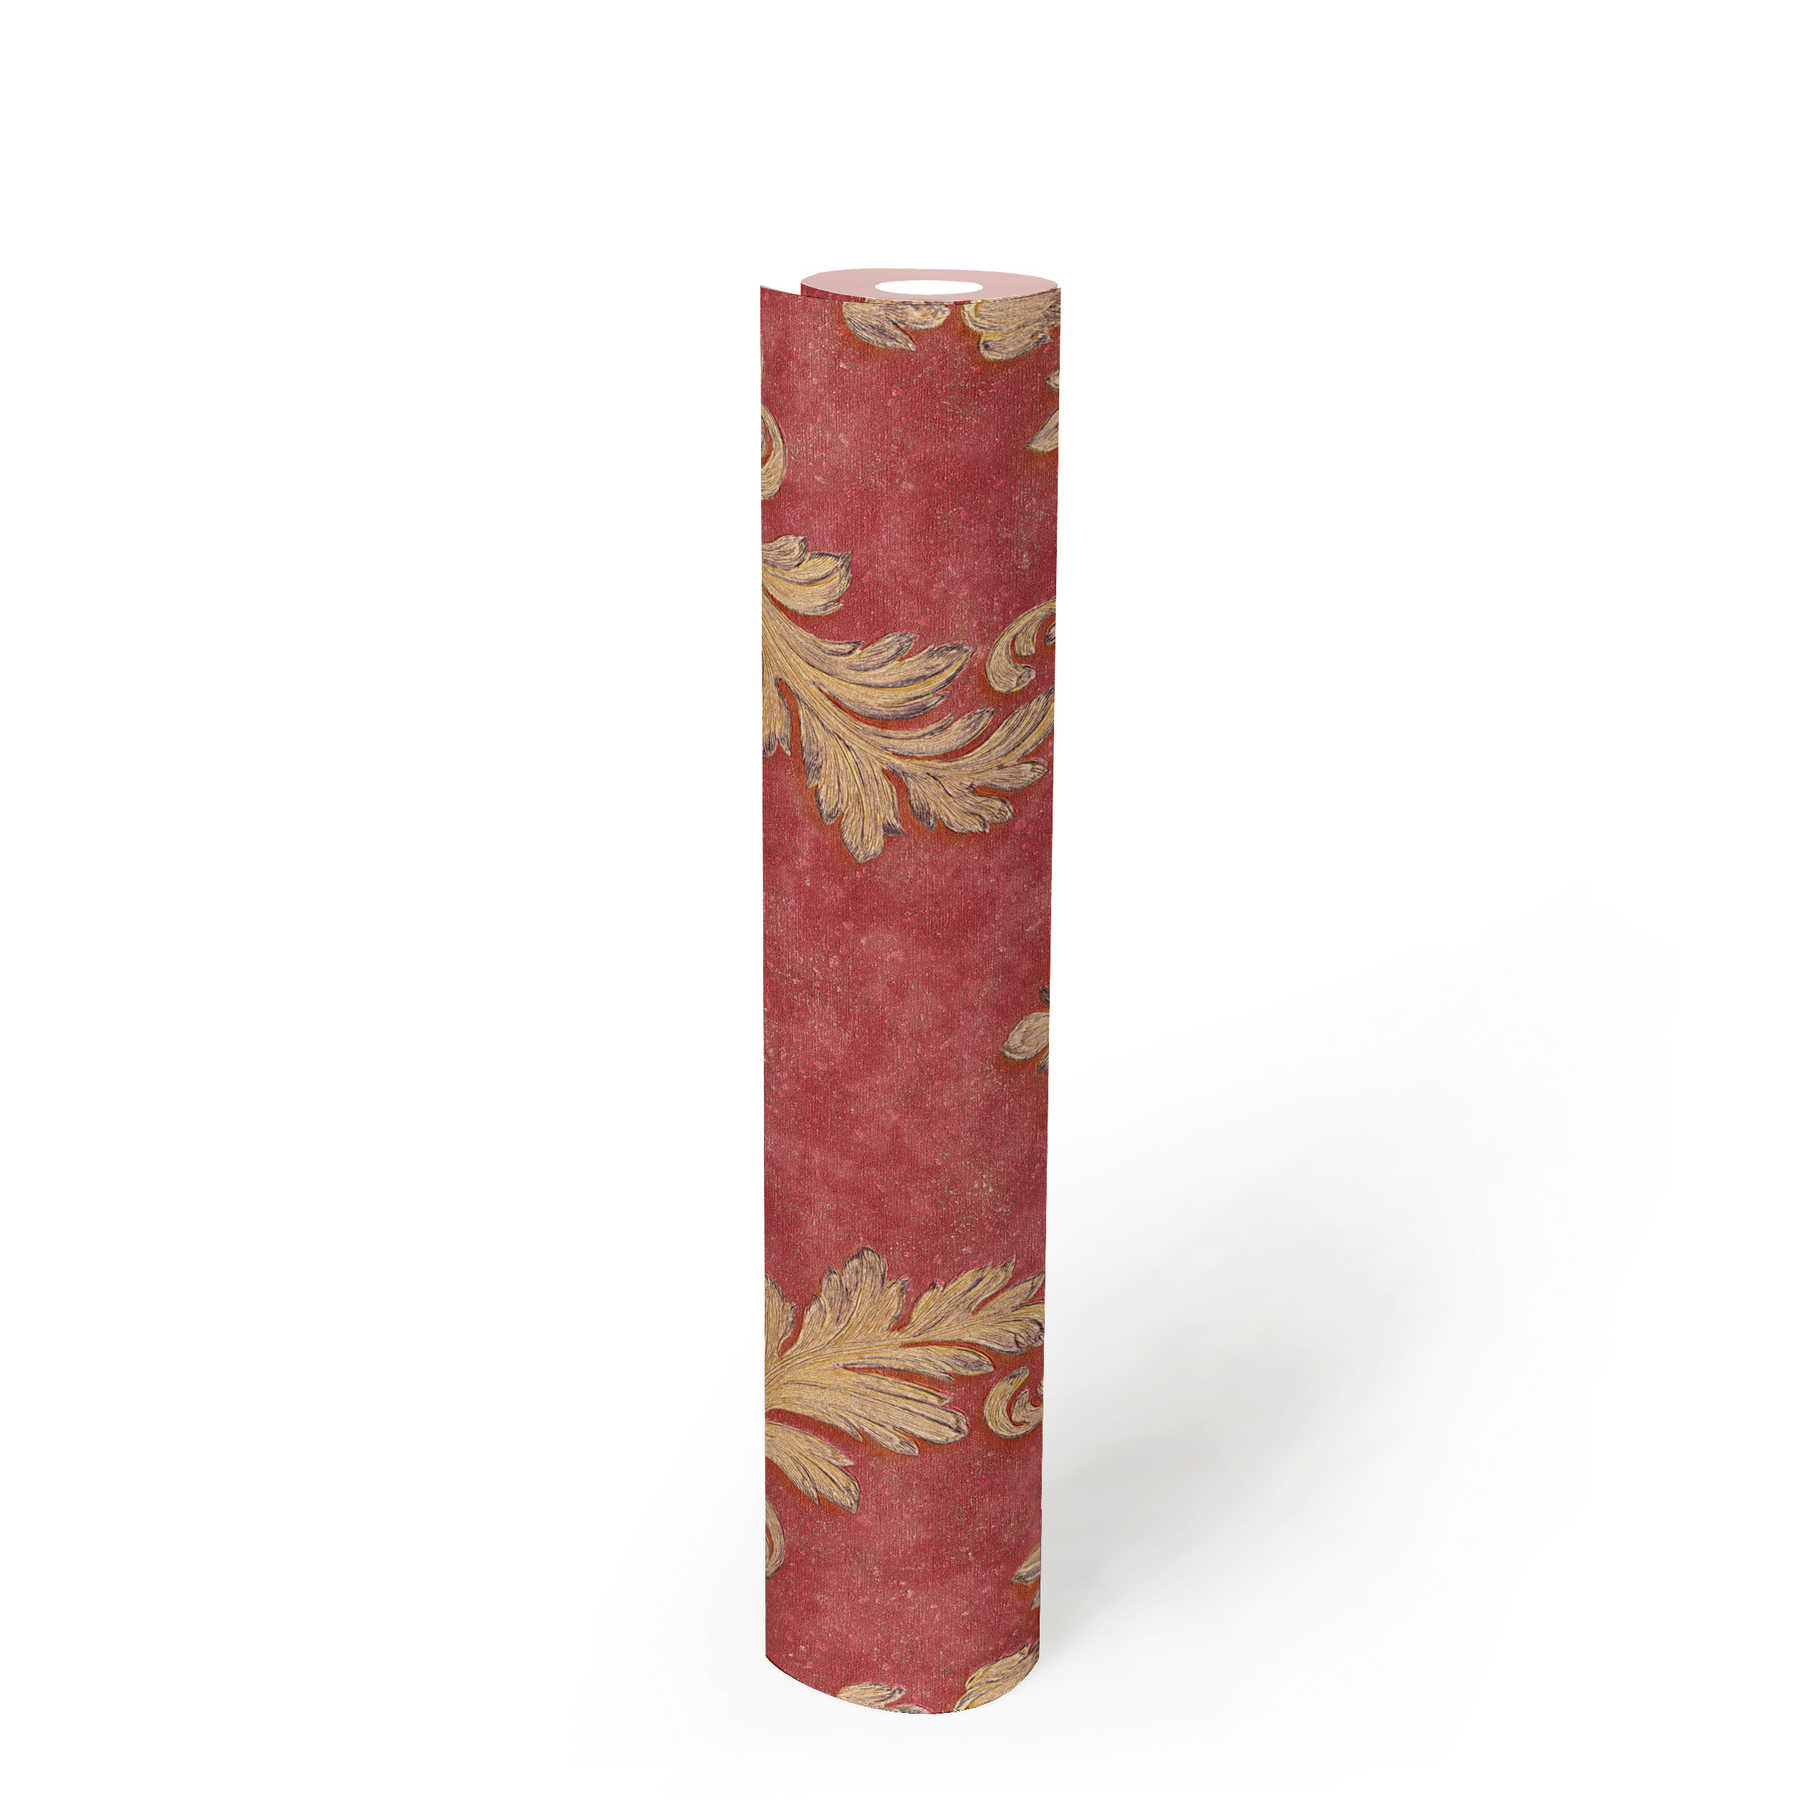             Papel pintado de diseño con adornos florales y efecto metálico - rojo, dorado
        